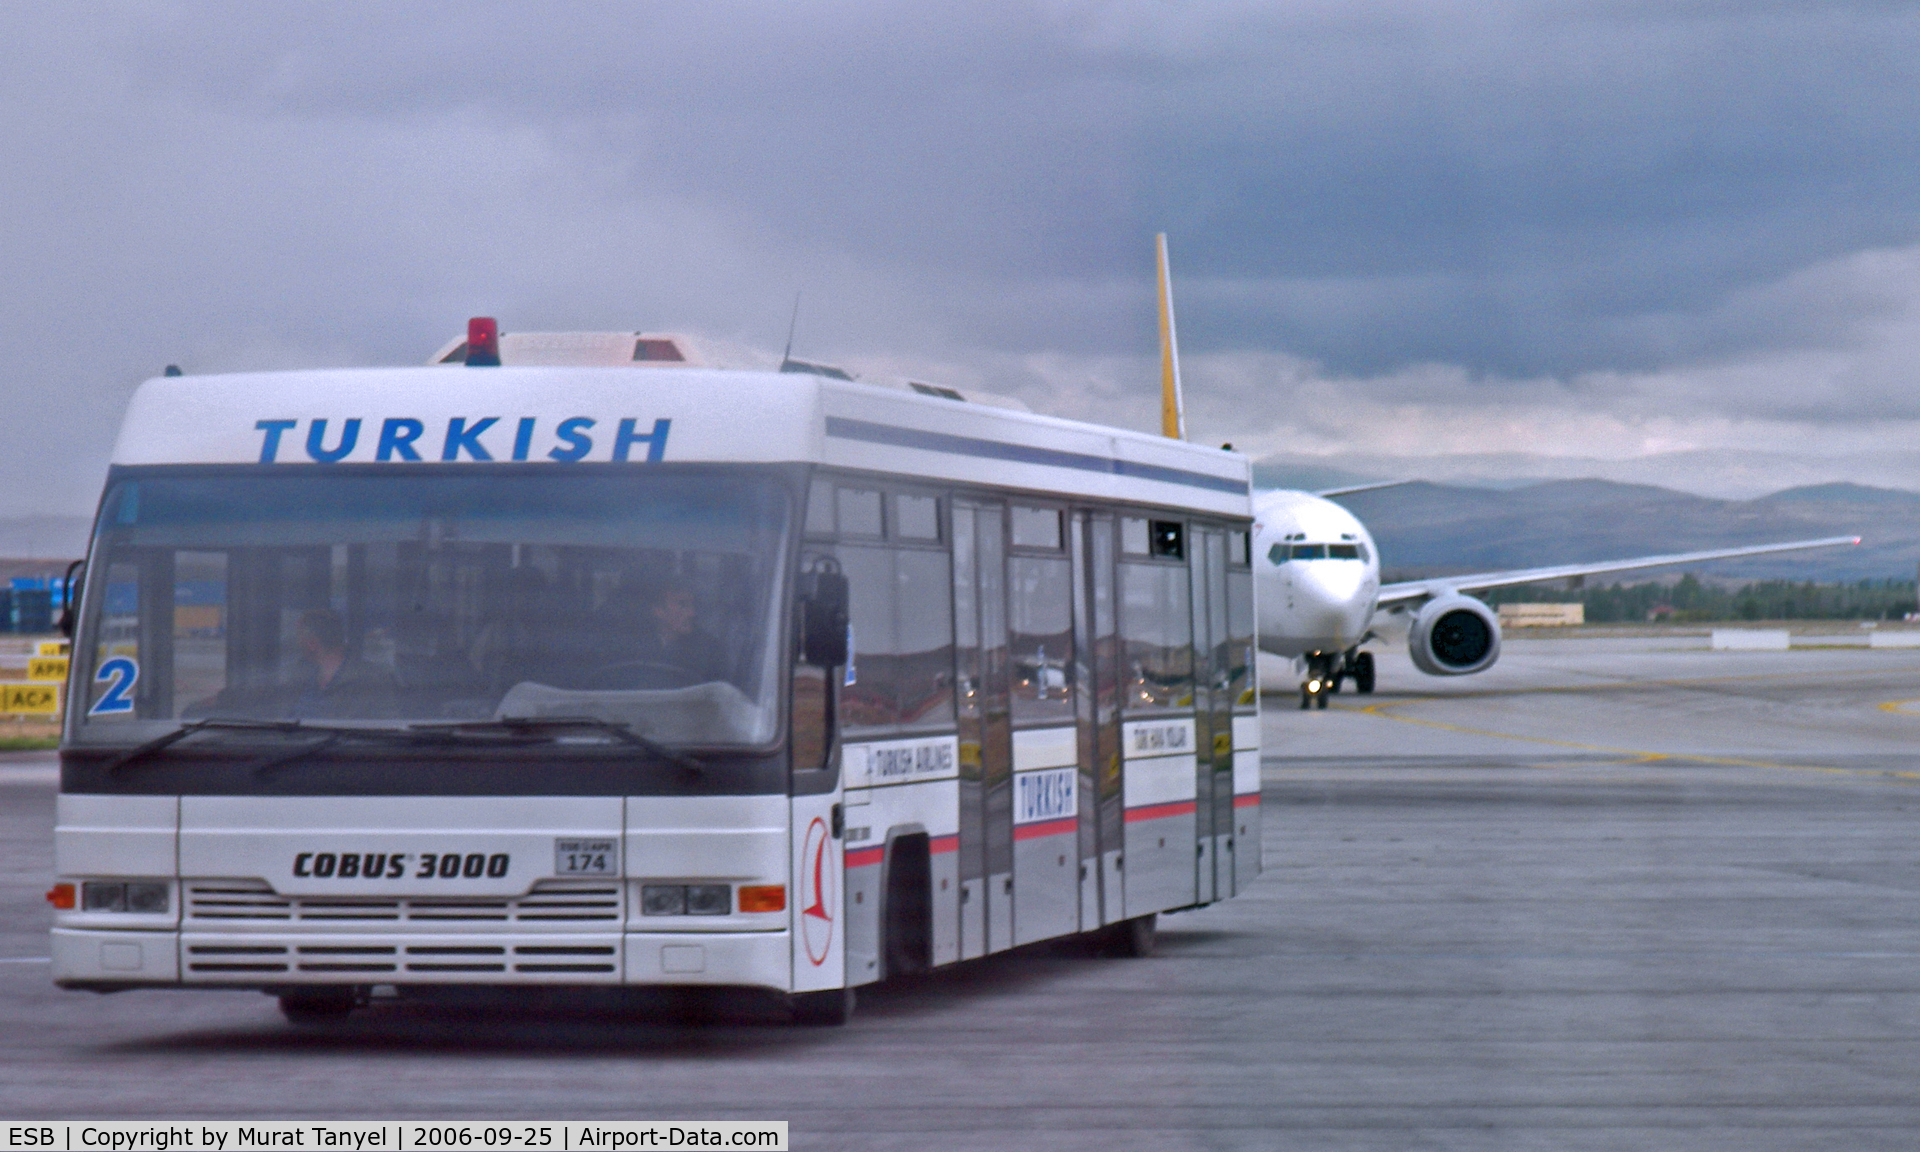 Ankara Esenbo?a International Airport, Ankara Turkey (ESB) - A Pegasus B737 in hot pursuit of a THY bus